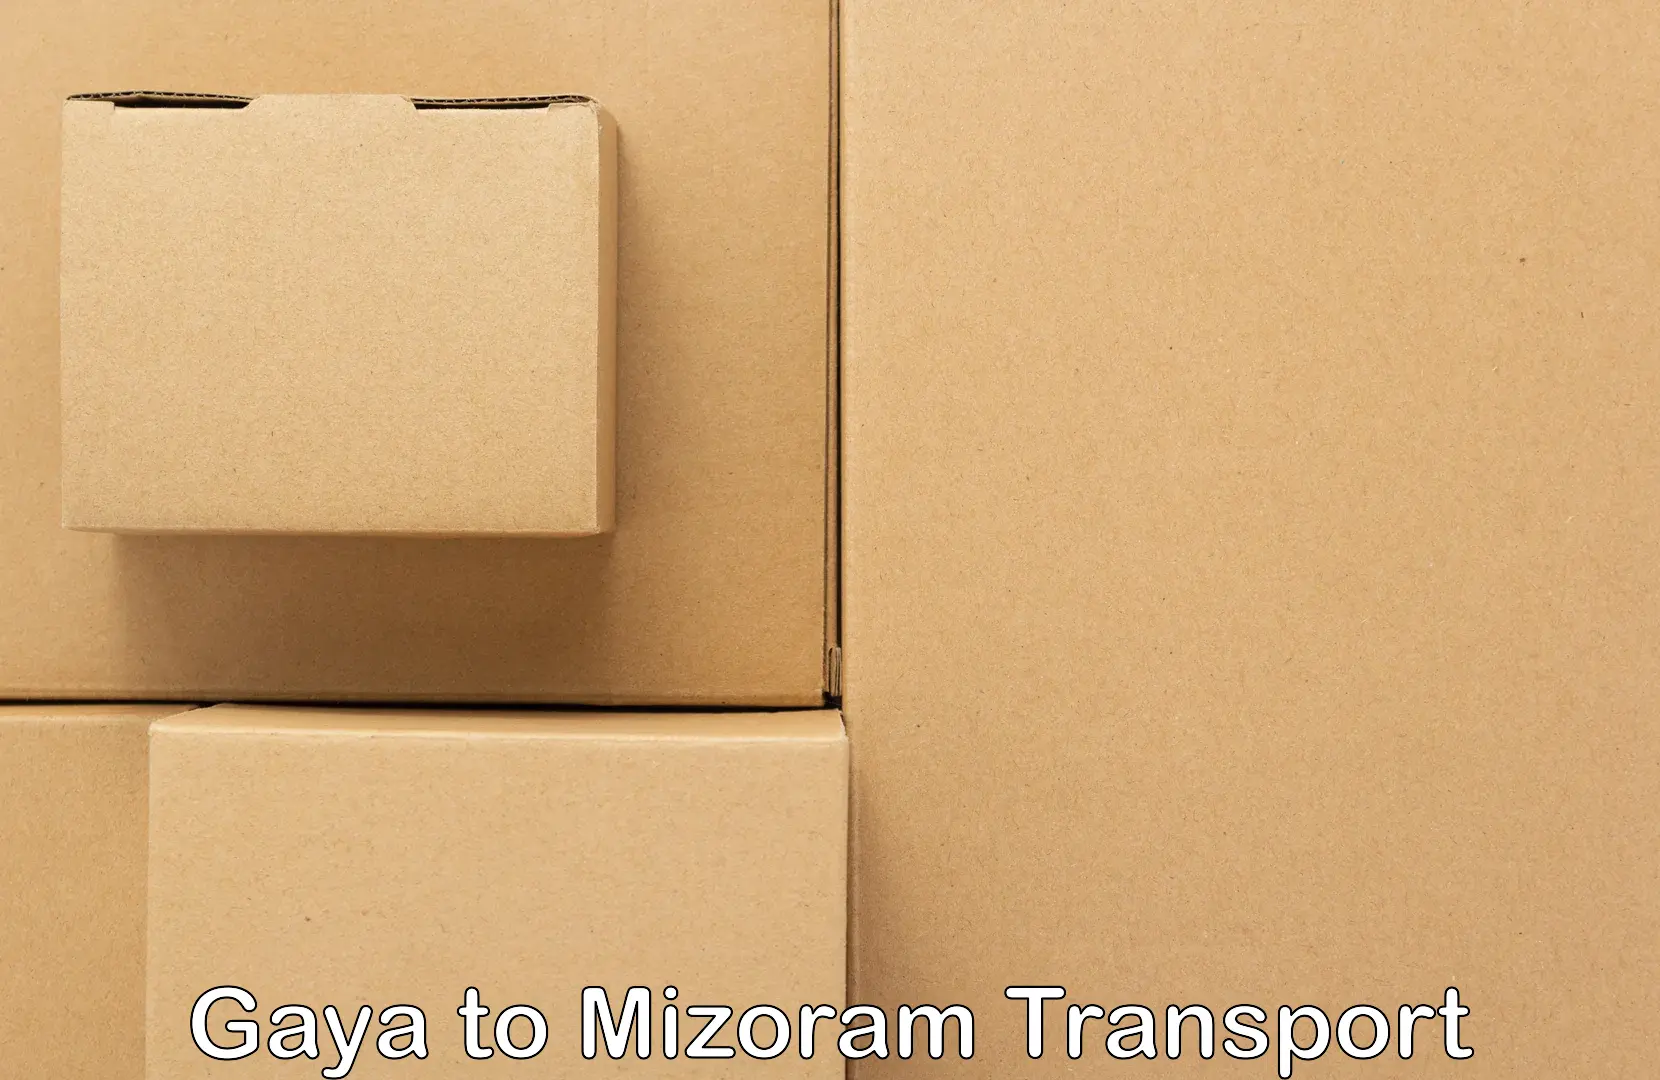 Express transport services Gaya to Mizoram